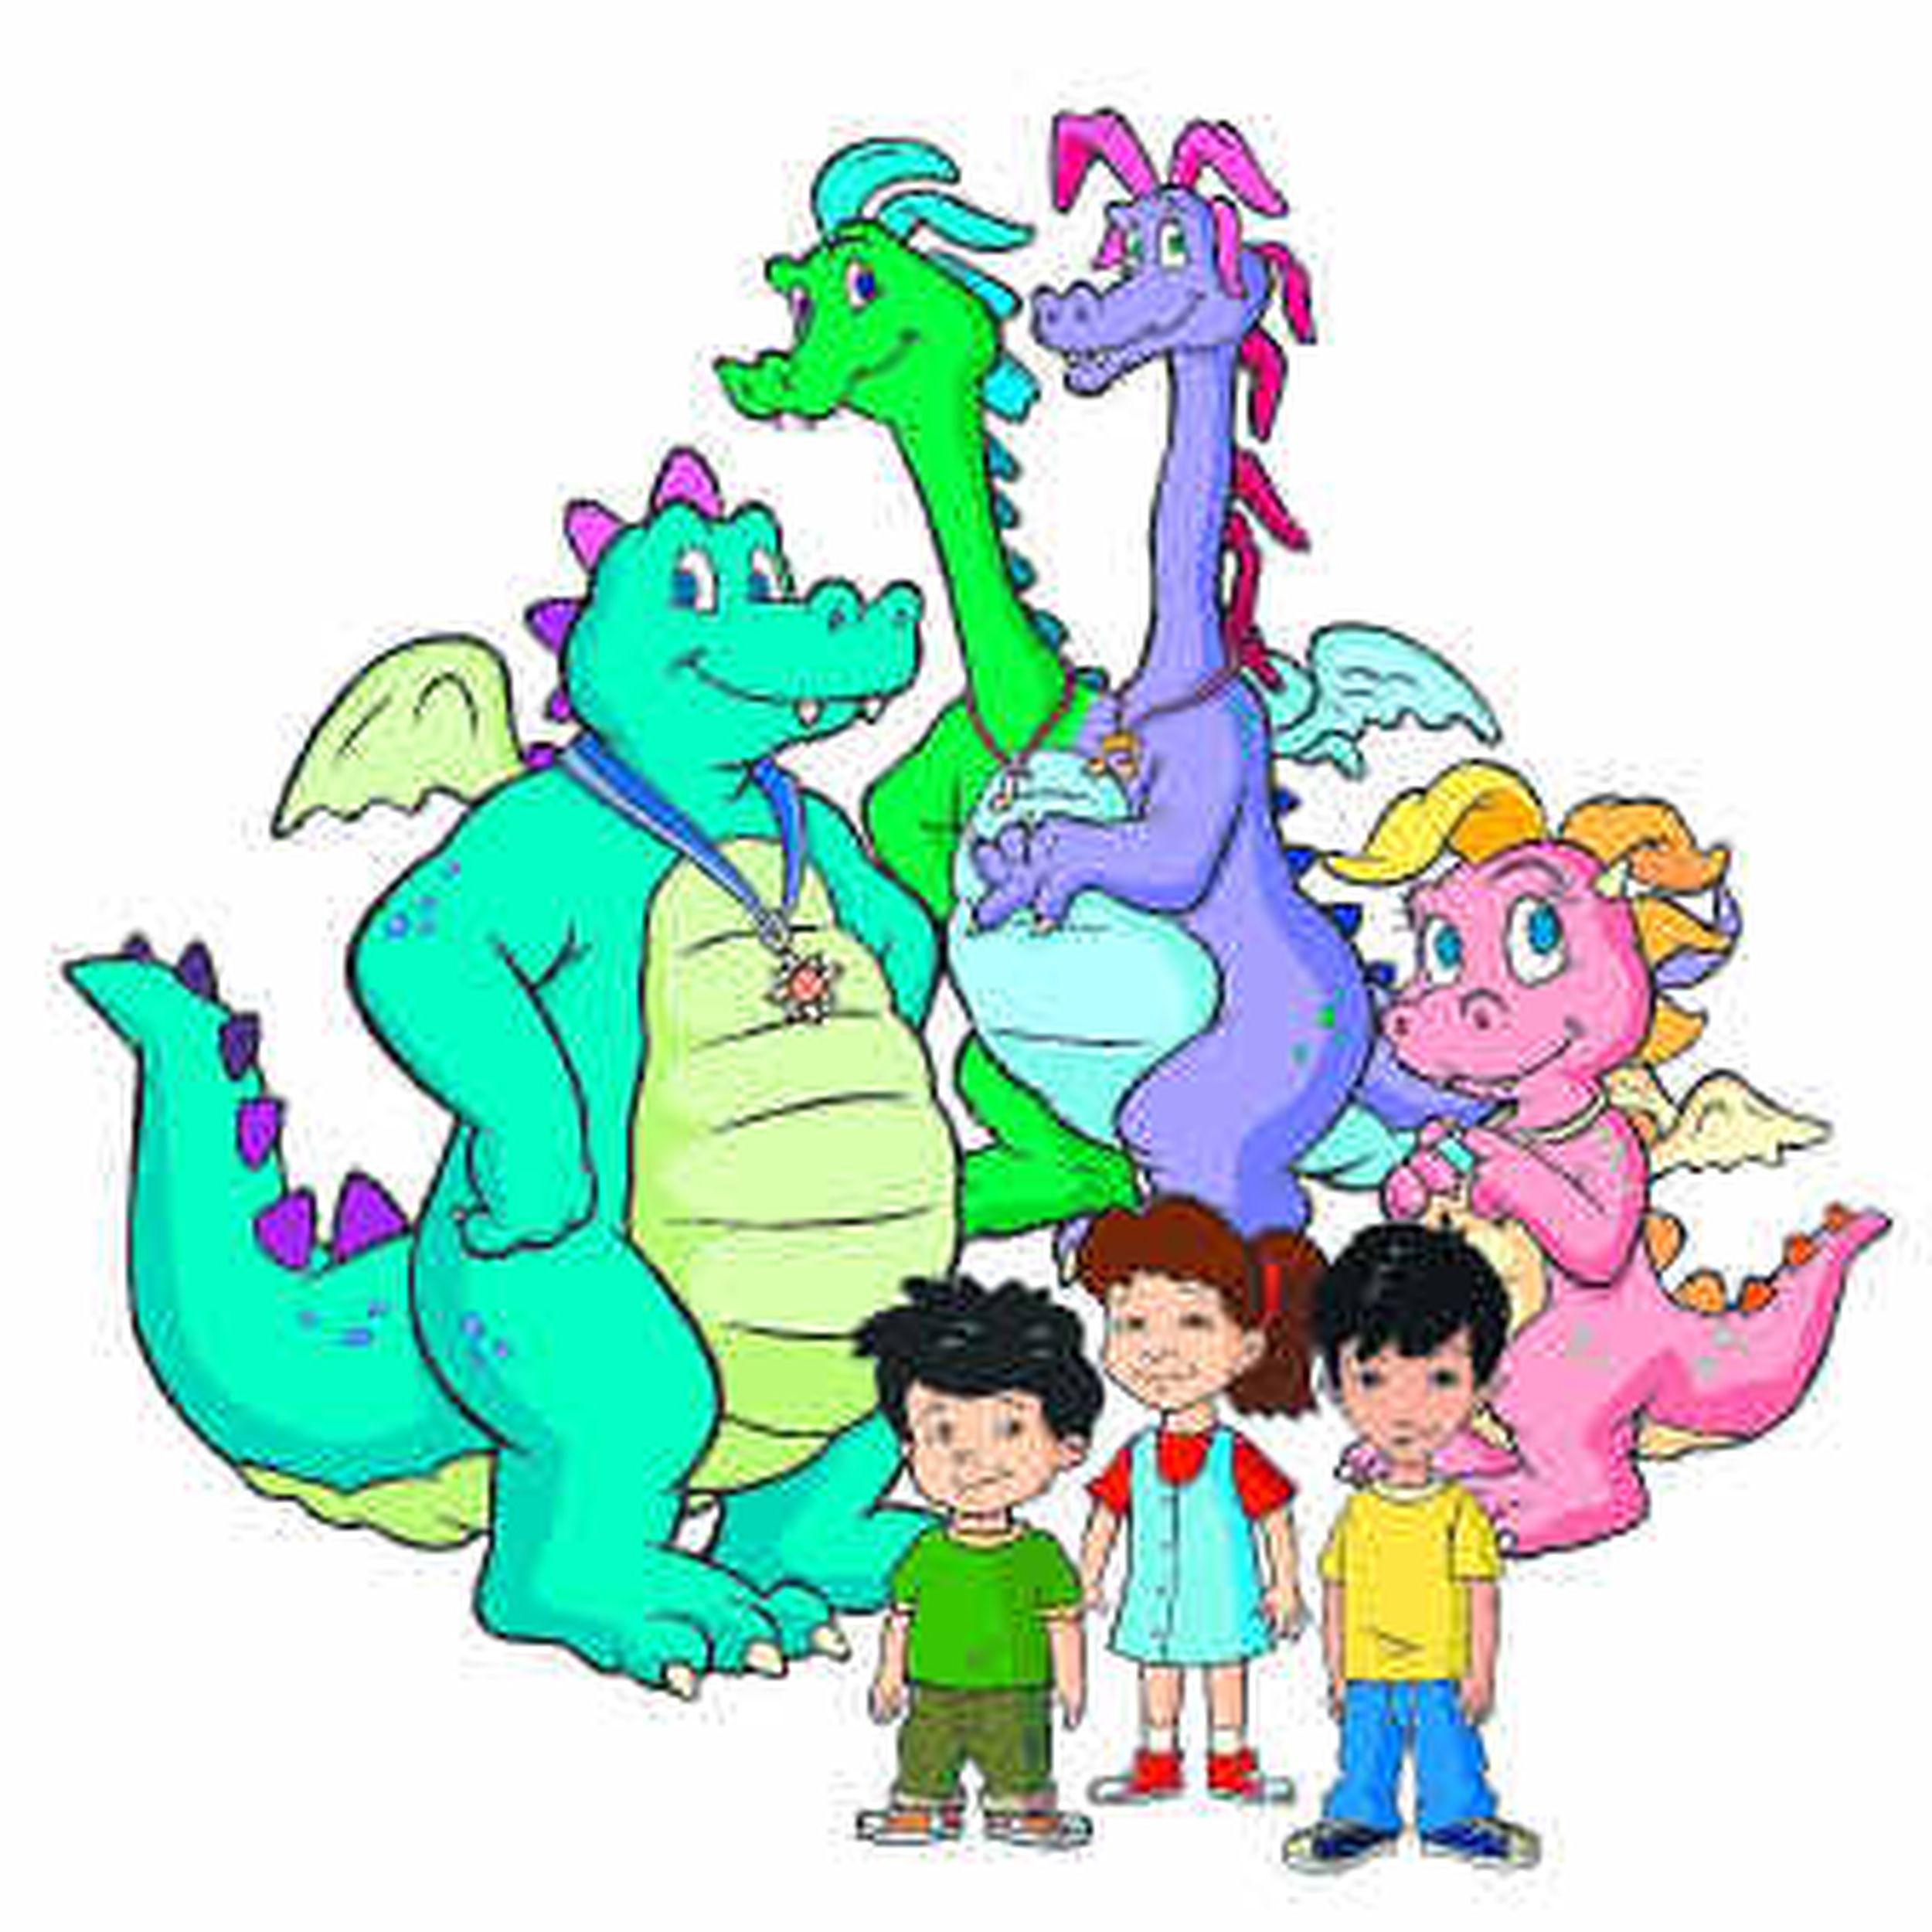 dragon tales pbs kids